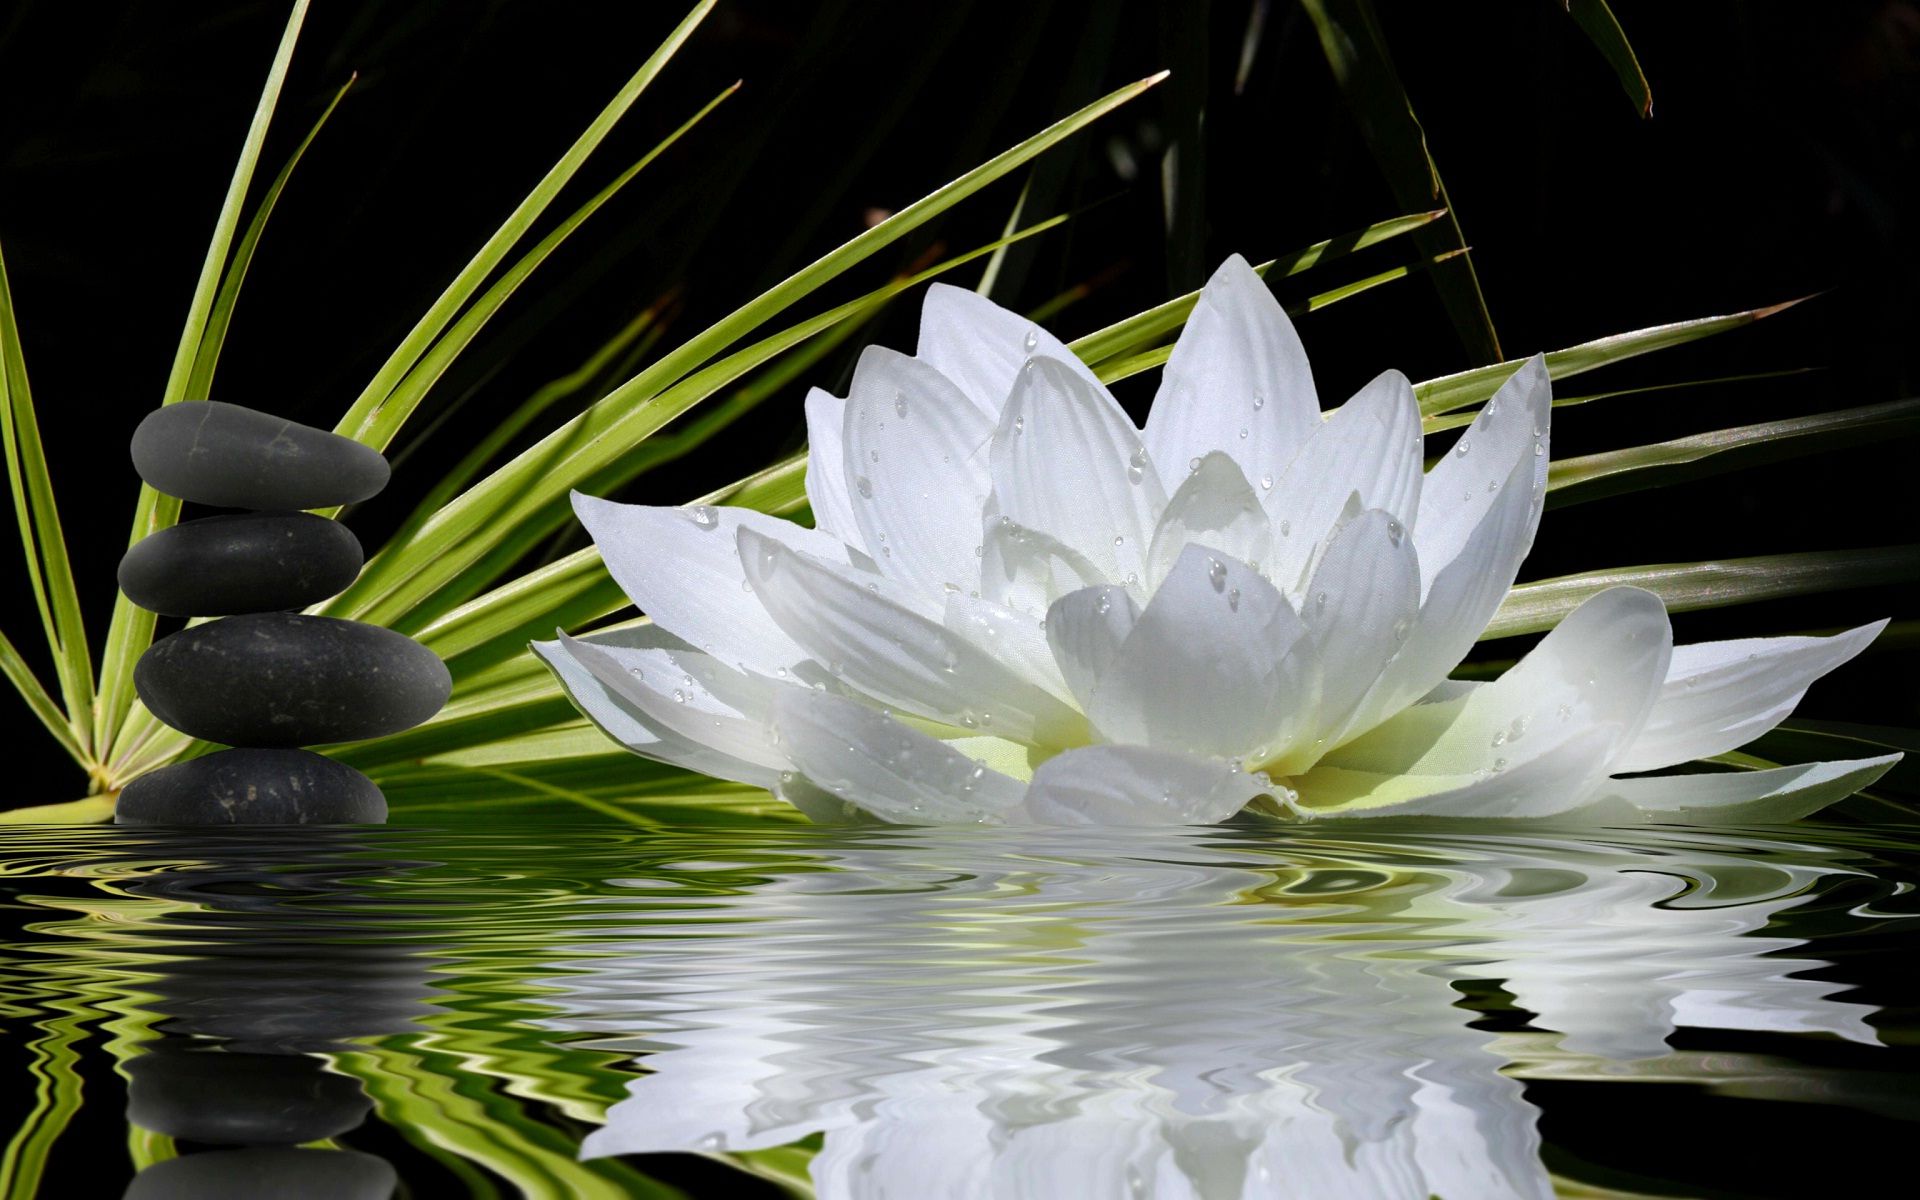 Hình ảnh hoa sen trắng động trên mặt nước